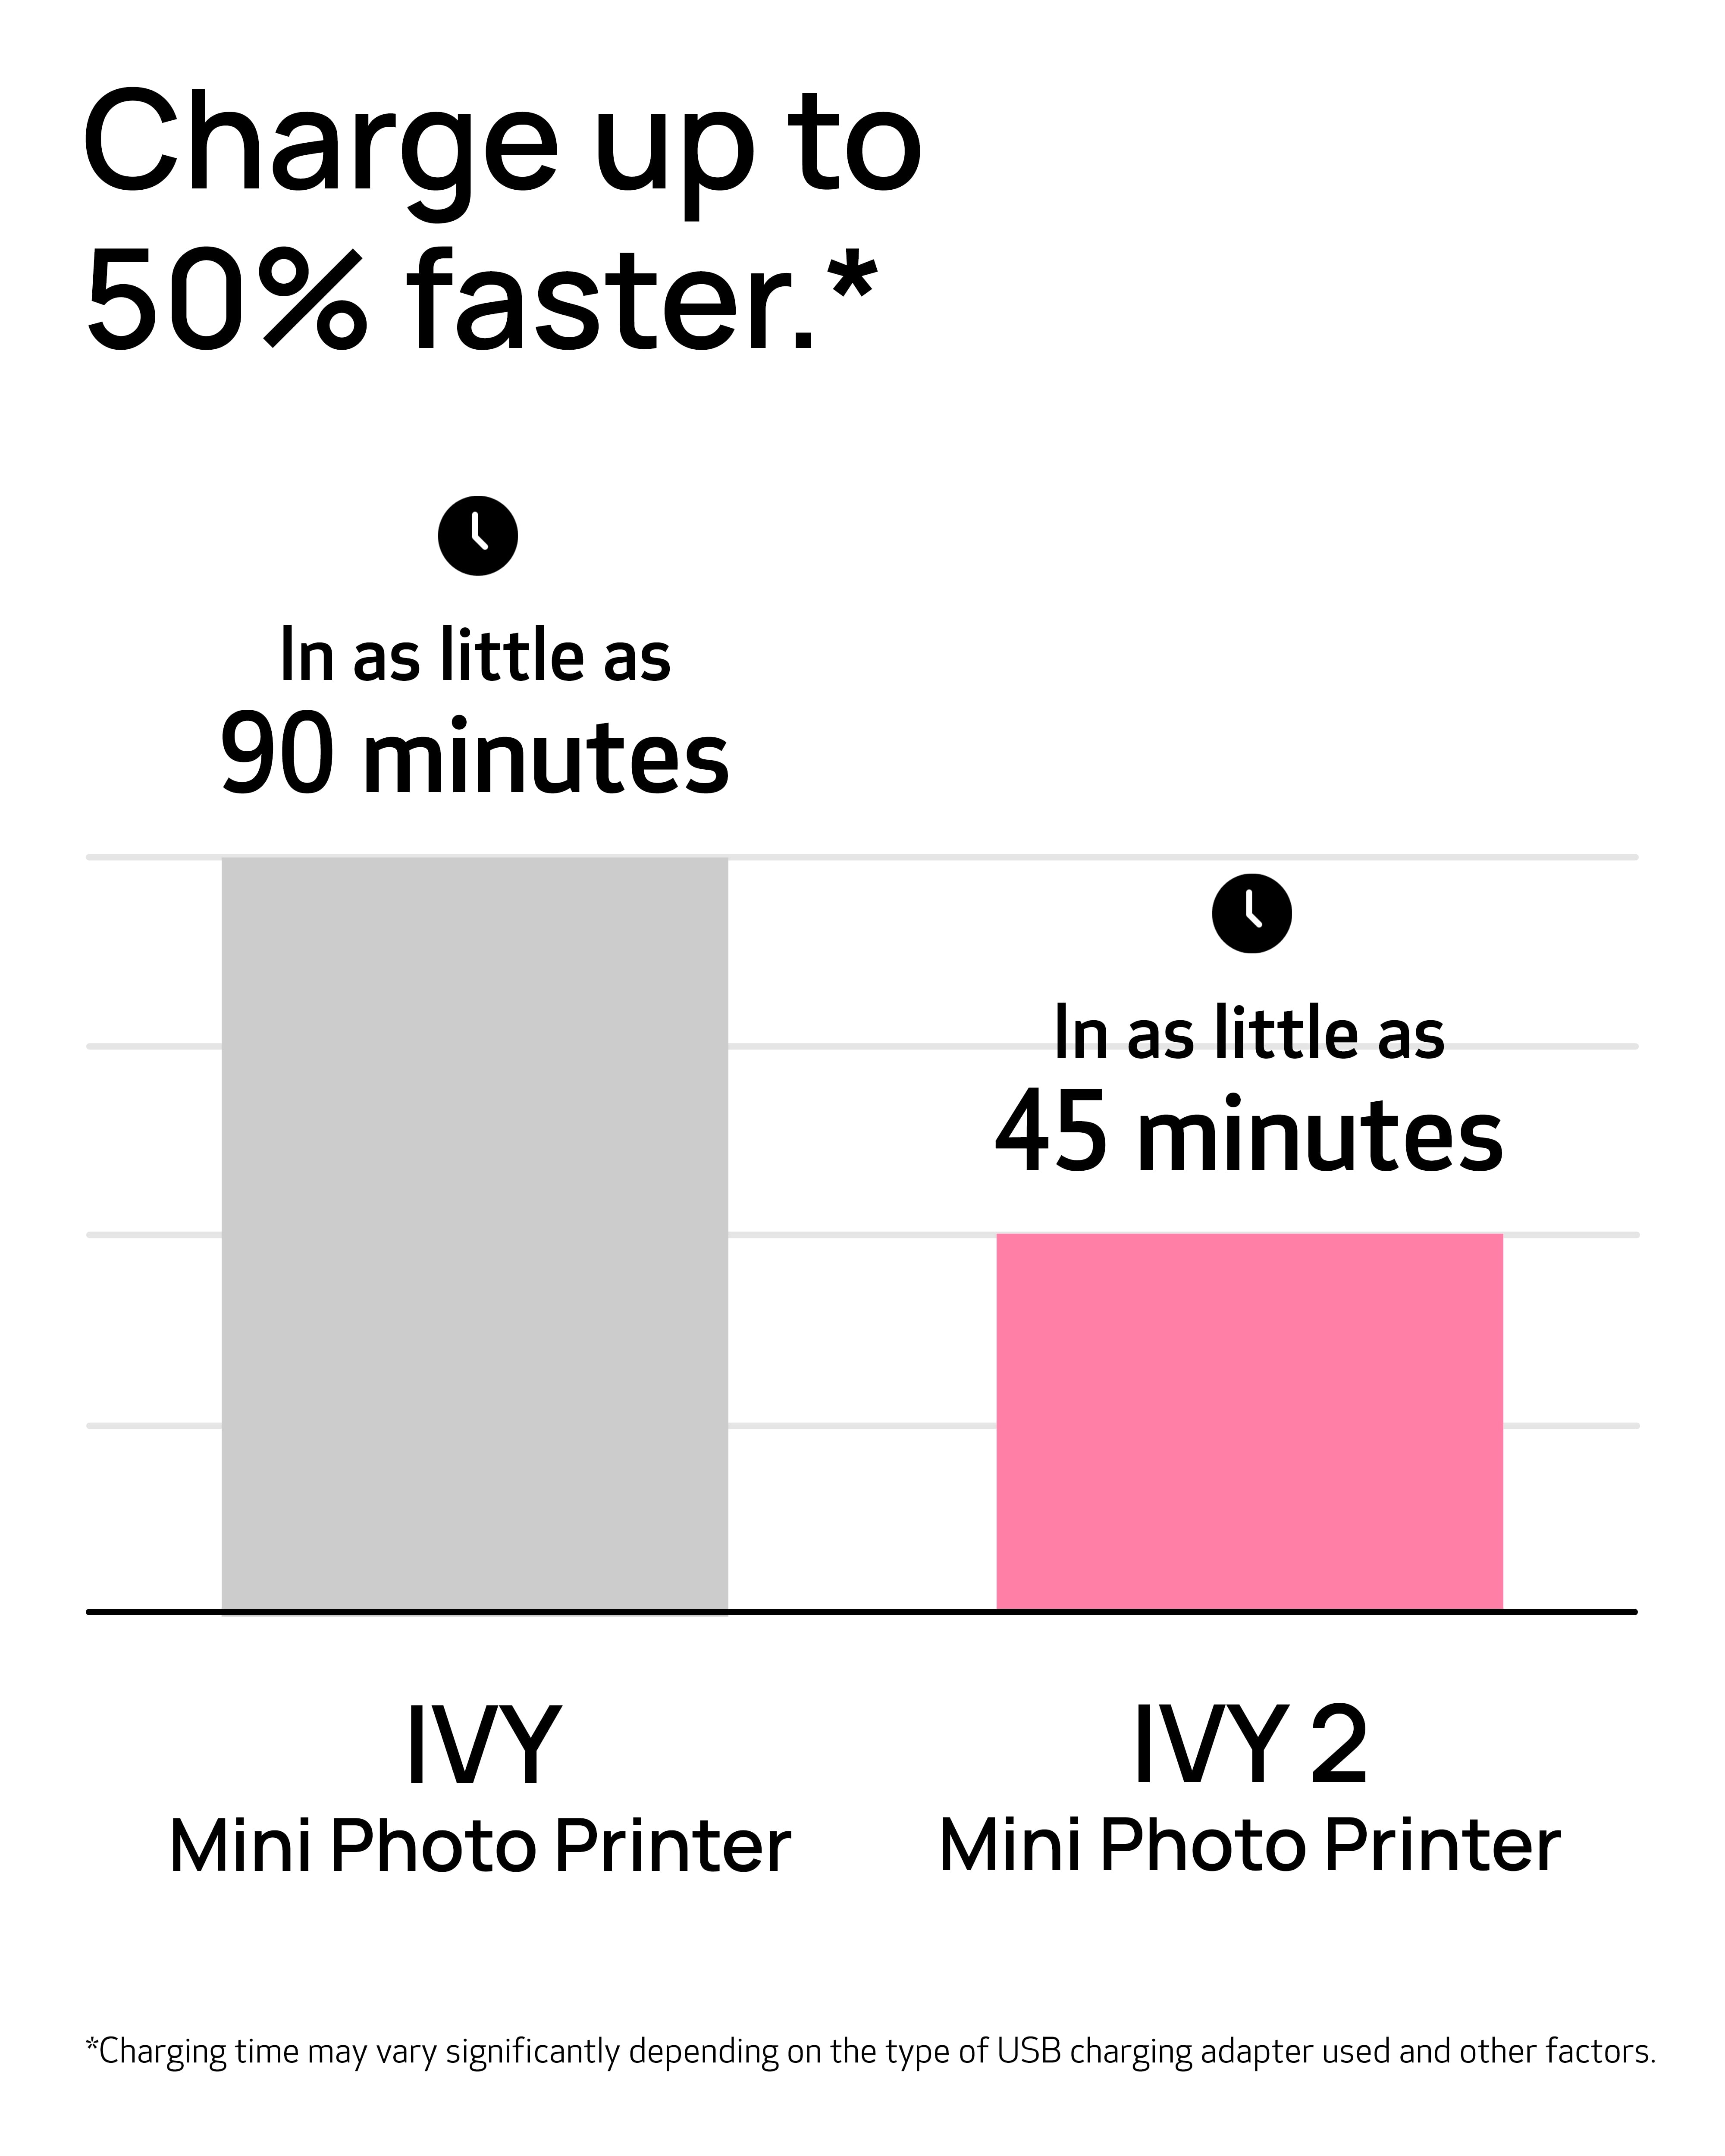 IVY 2 Mini Photo Printer Pure White